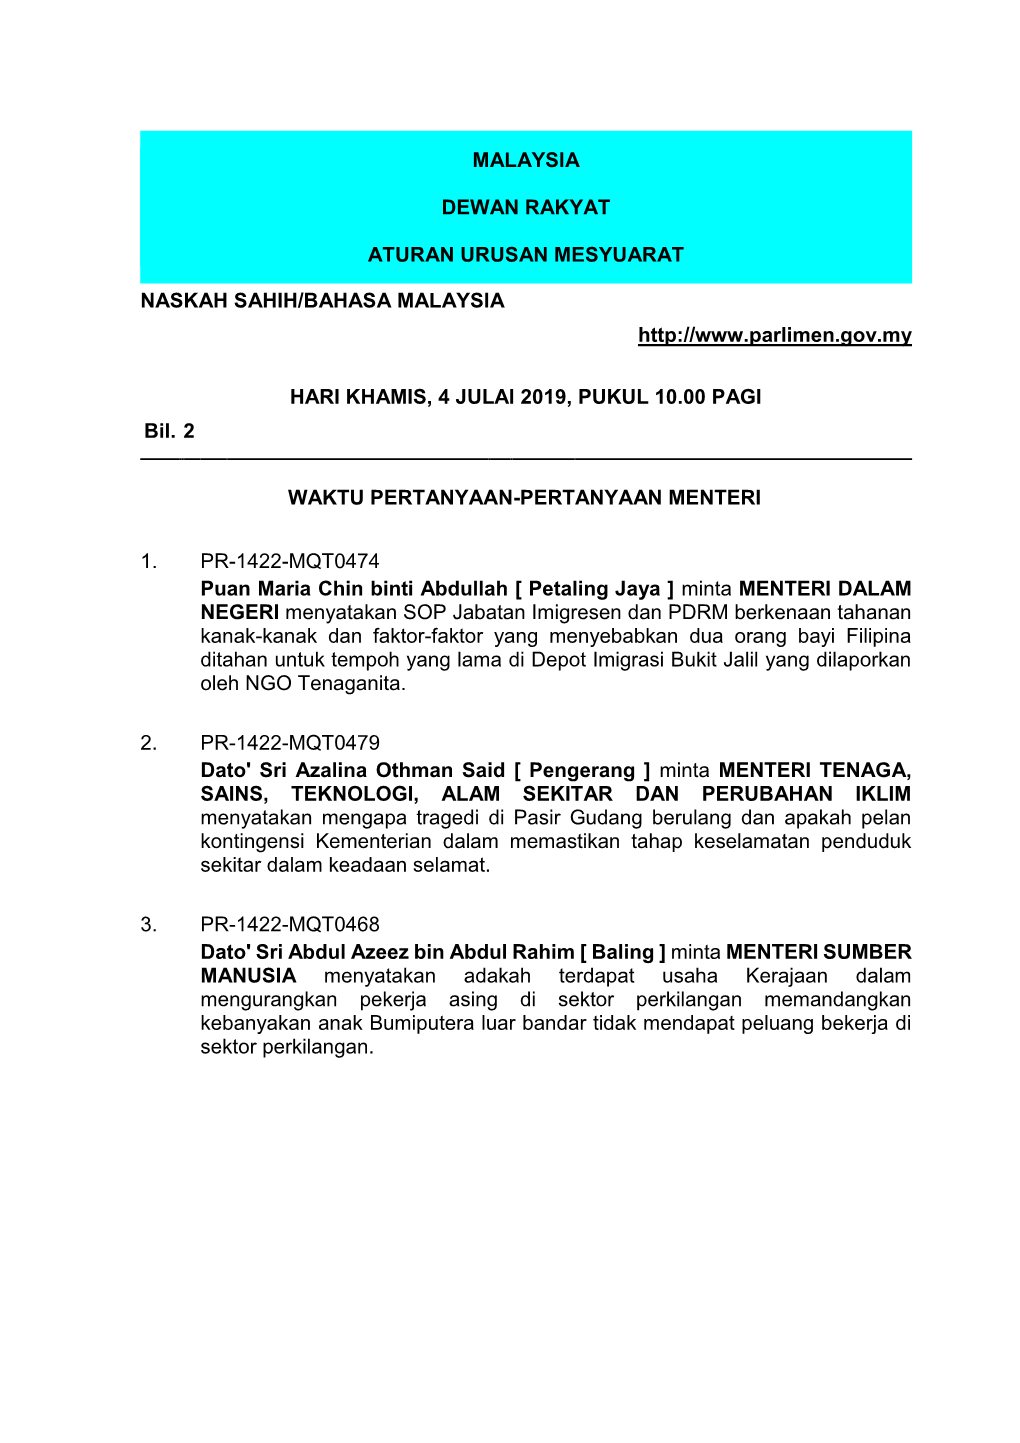 Malaysia Dewan Rakyat Aturan Urusan Mesyuarat Naskah Sahih/Bahasa Malaysia Hari Khamis, 4 Julai 2019